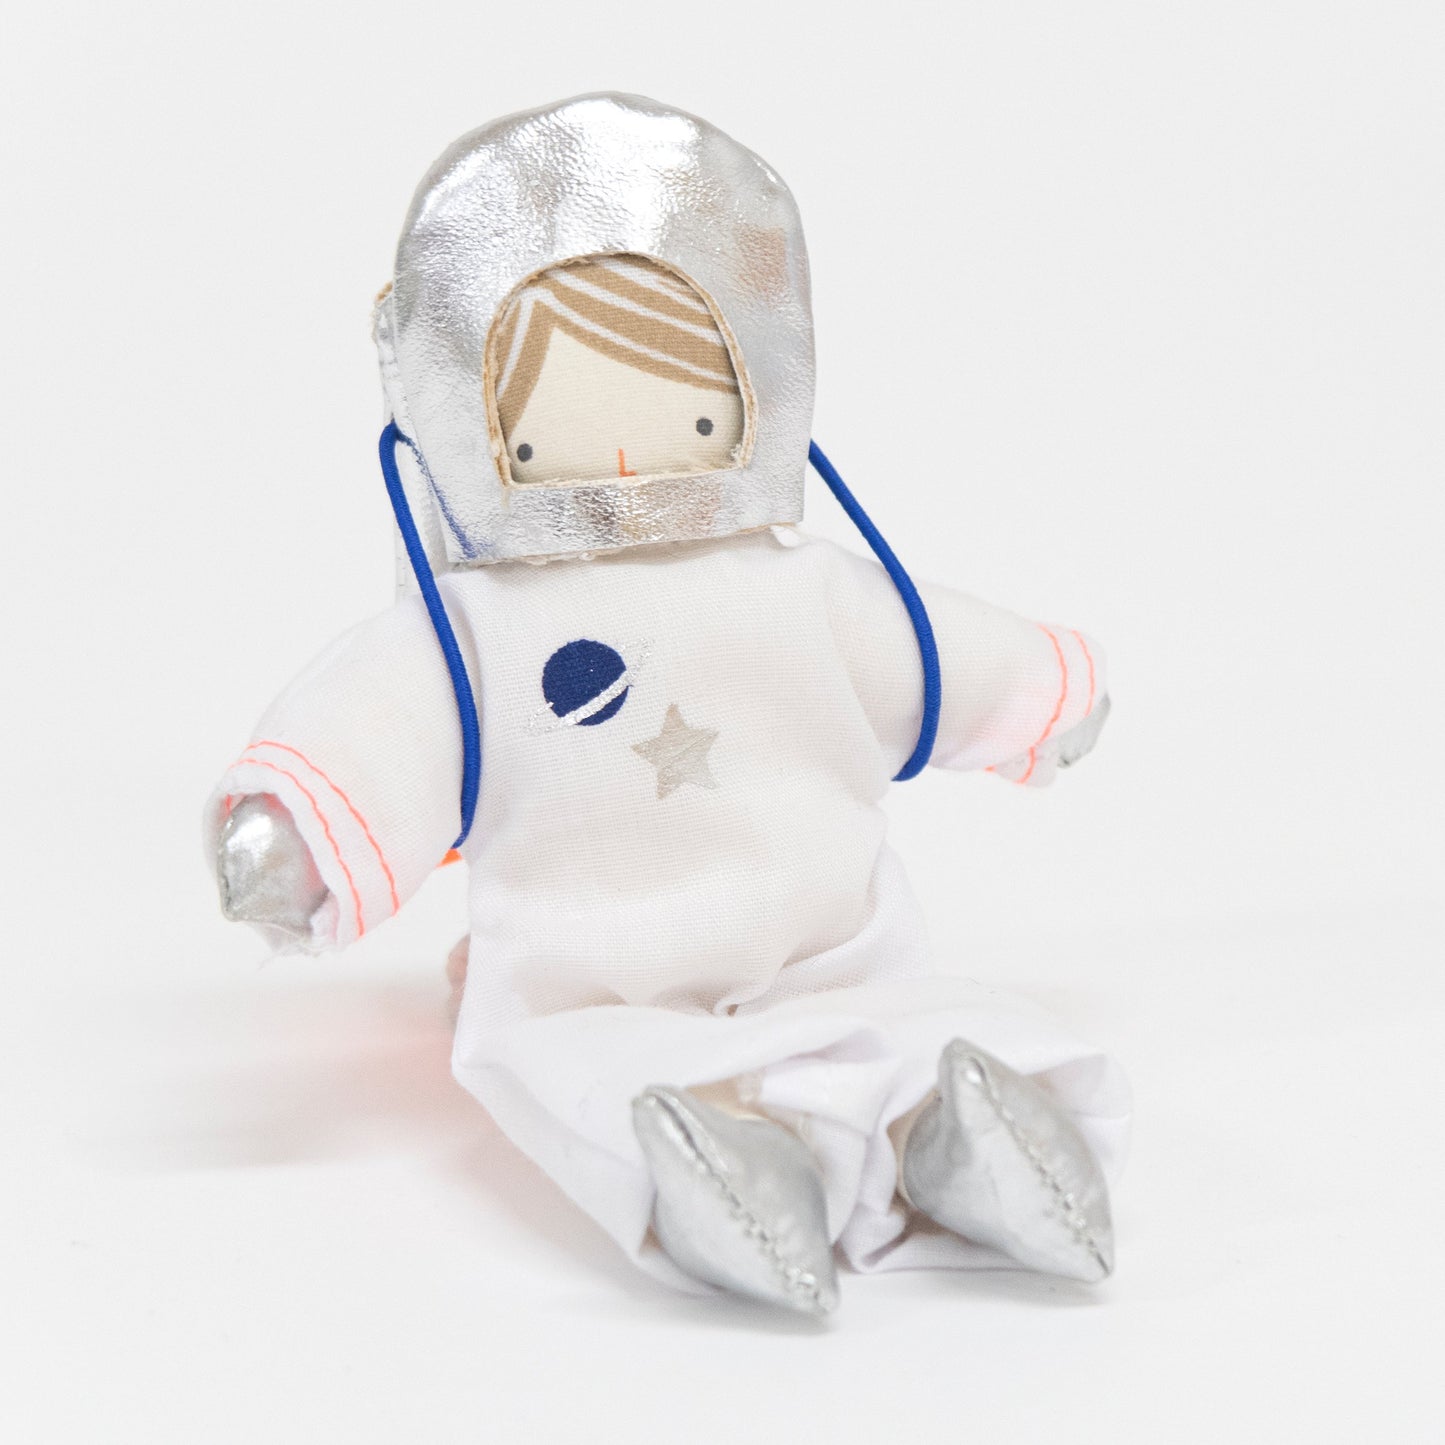 Astronaut Mini Suitcase